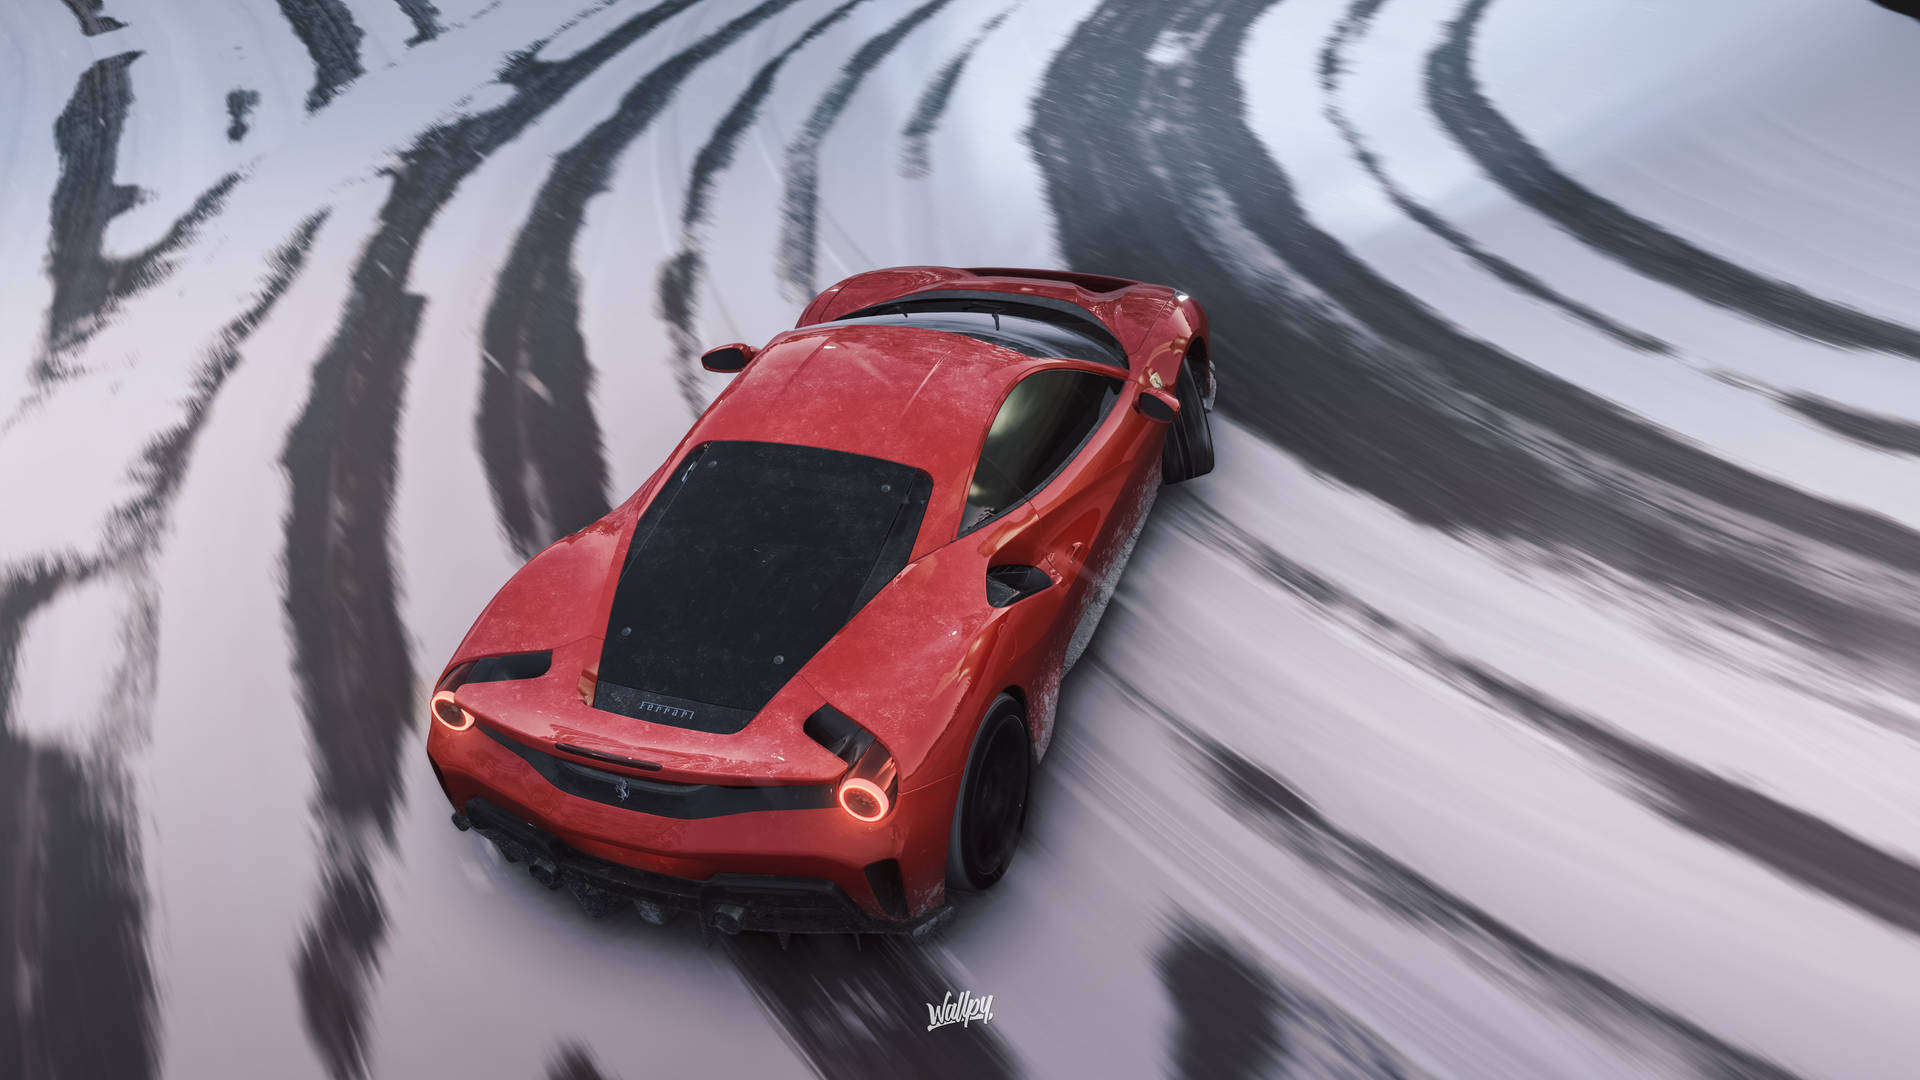 Forzahorizon 4 4k Derrapes De Nieve En Ferrari Fondo de pantalla